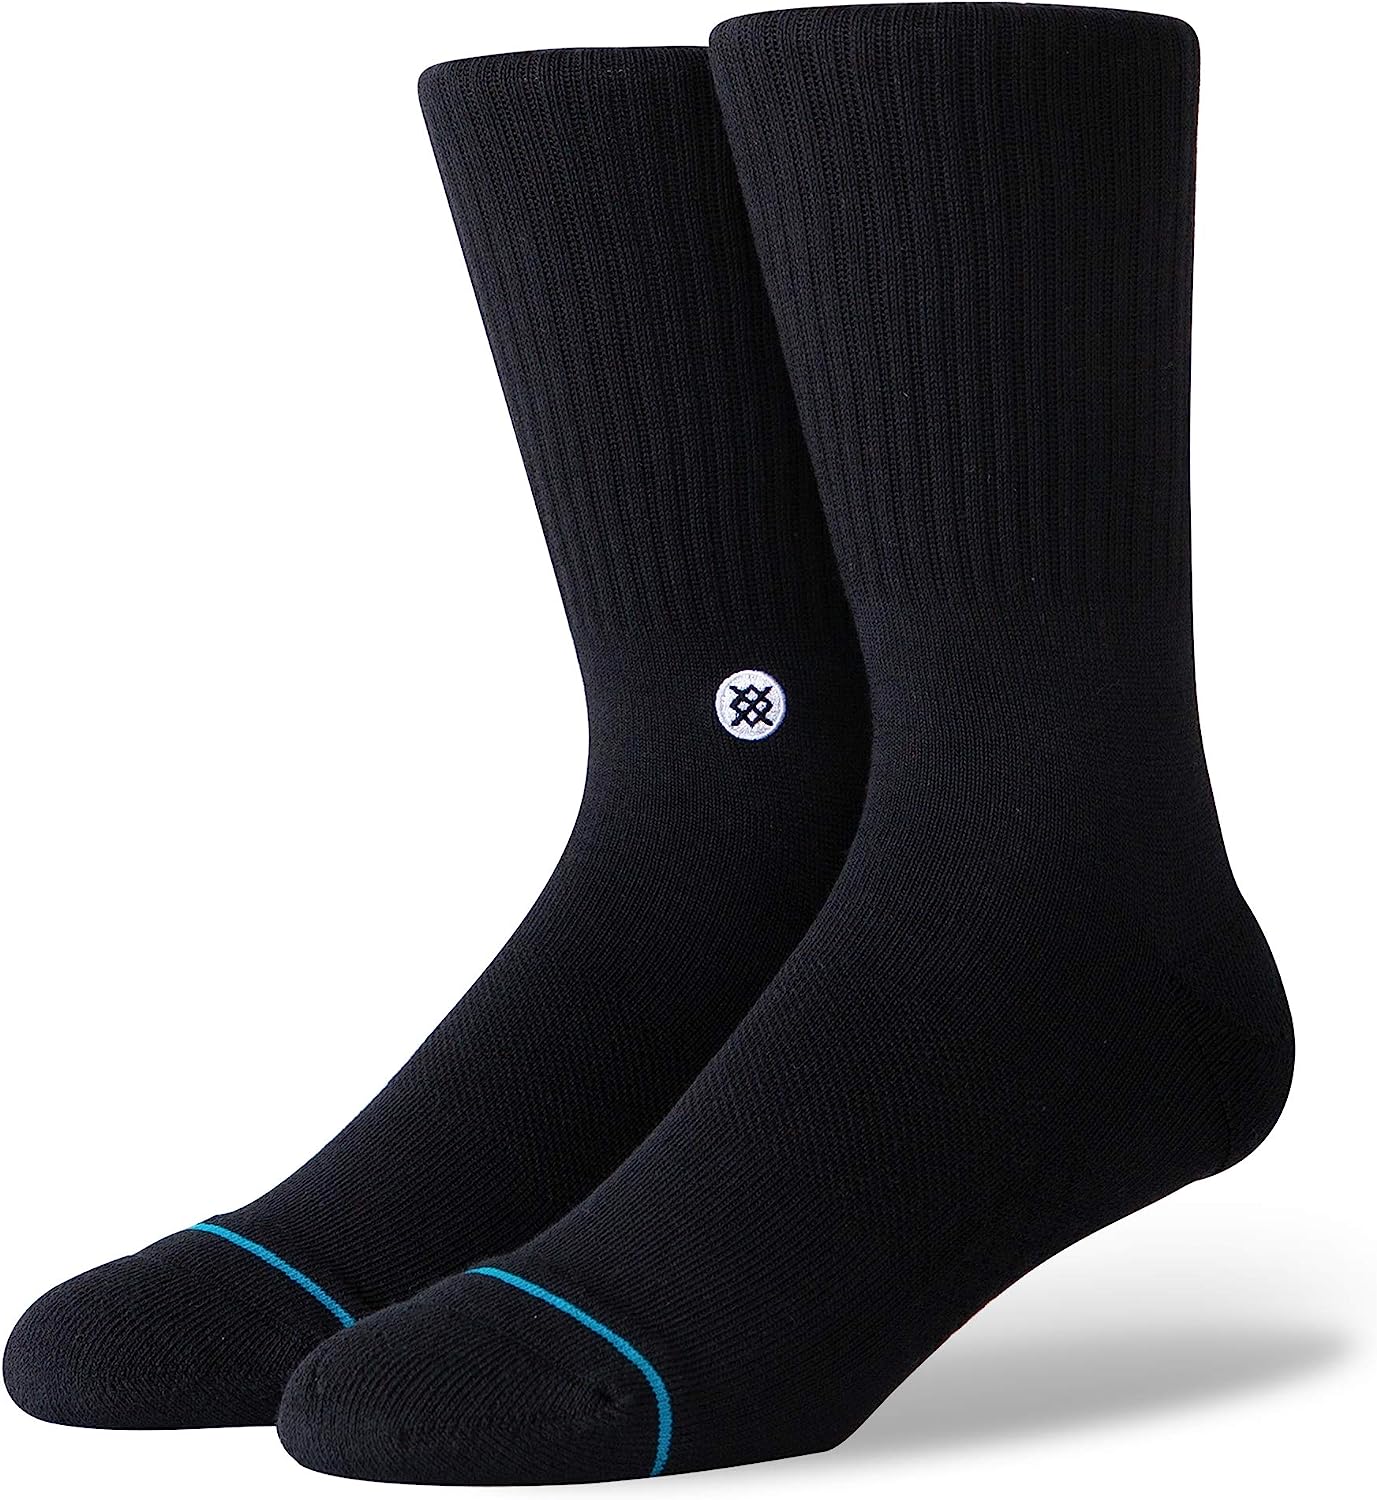 Stance Socks Image 1